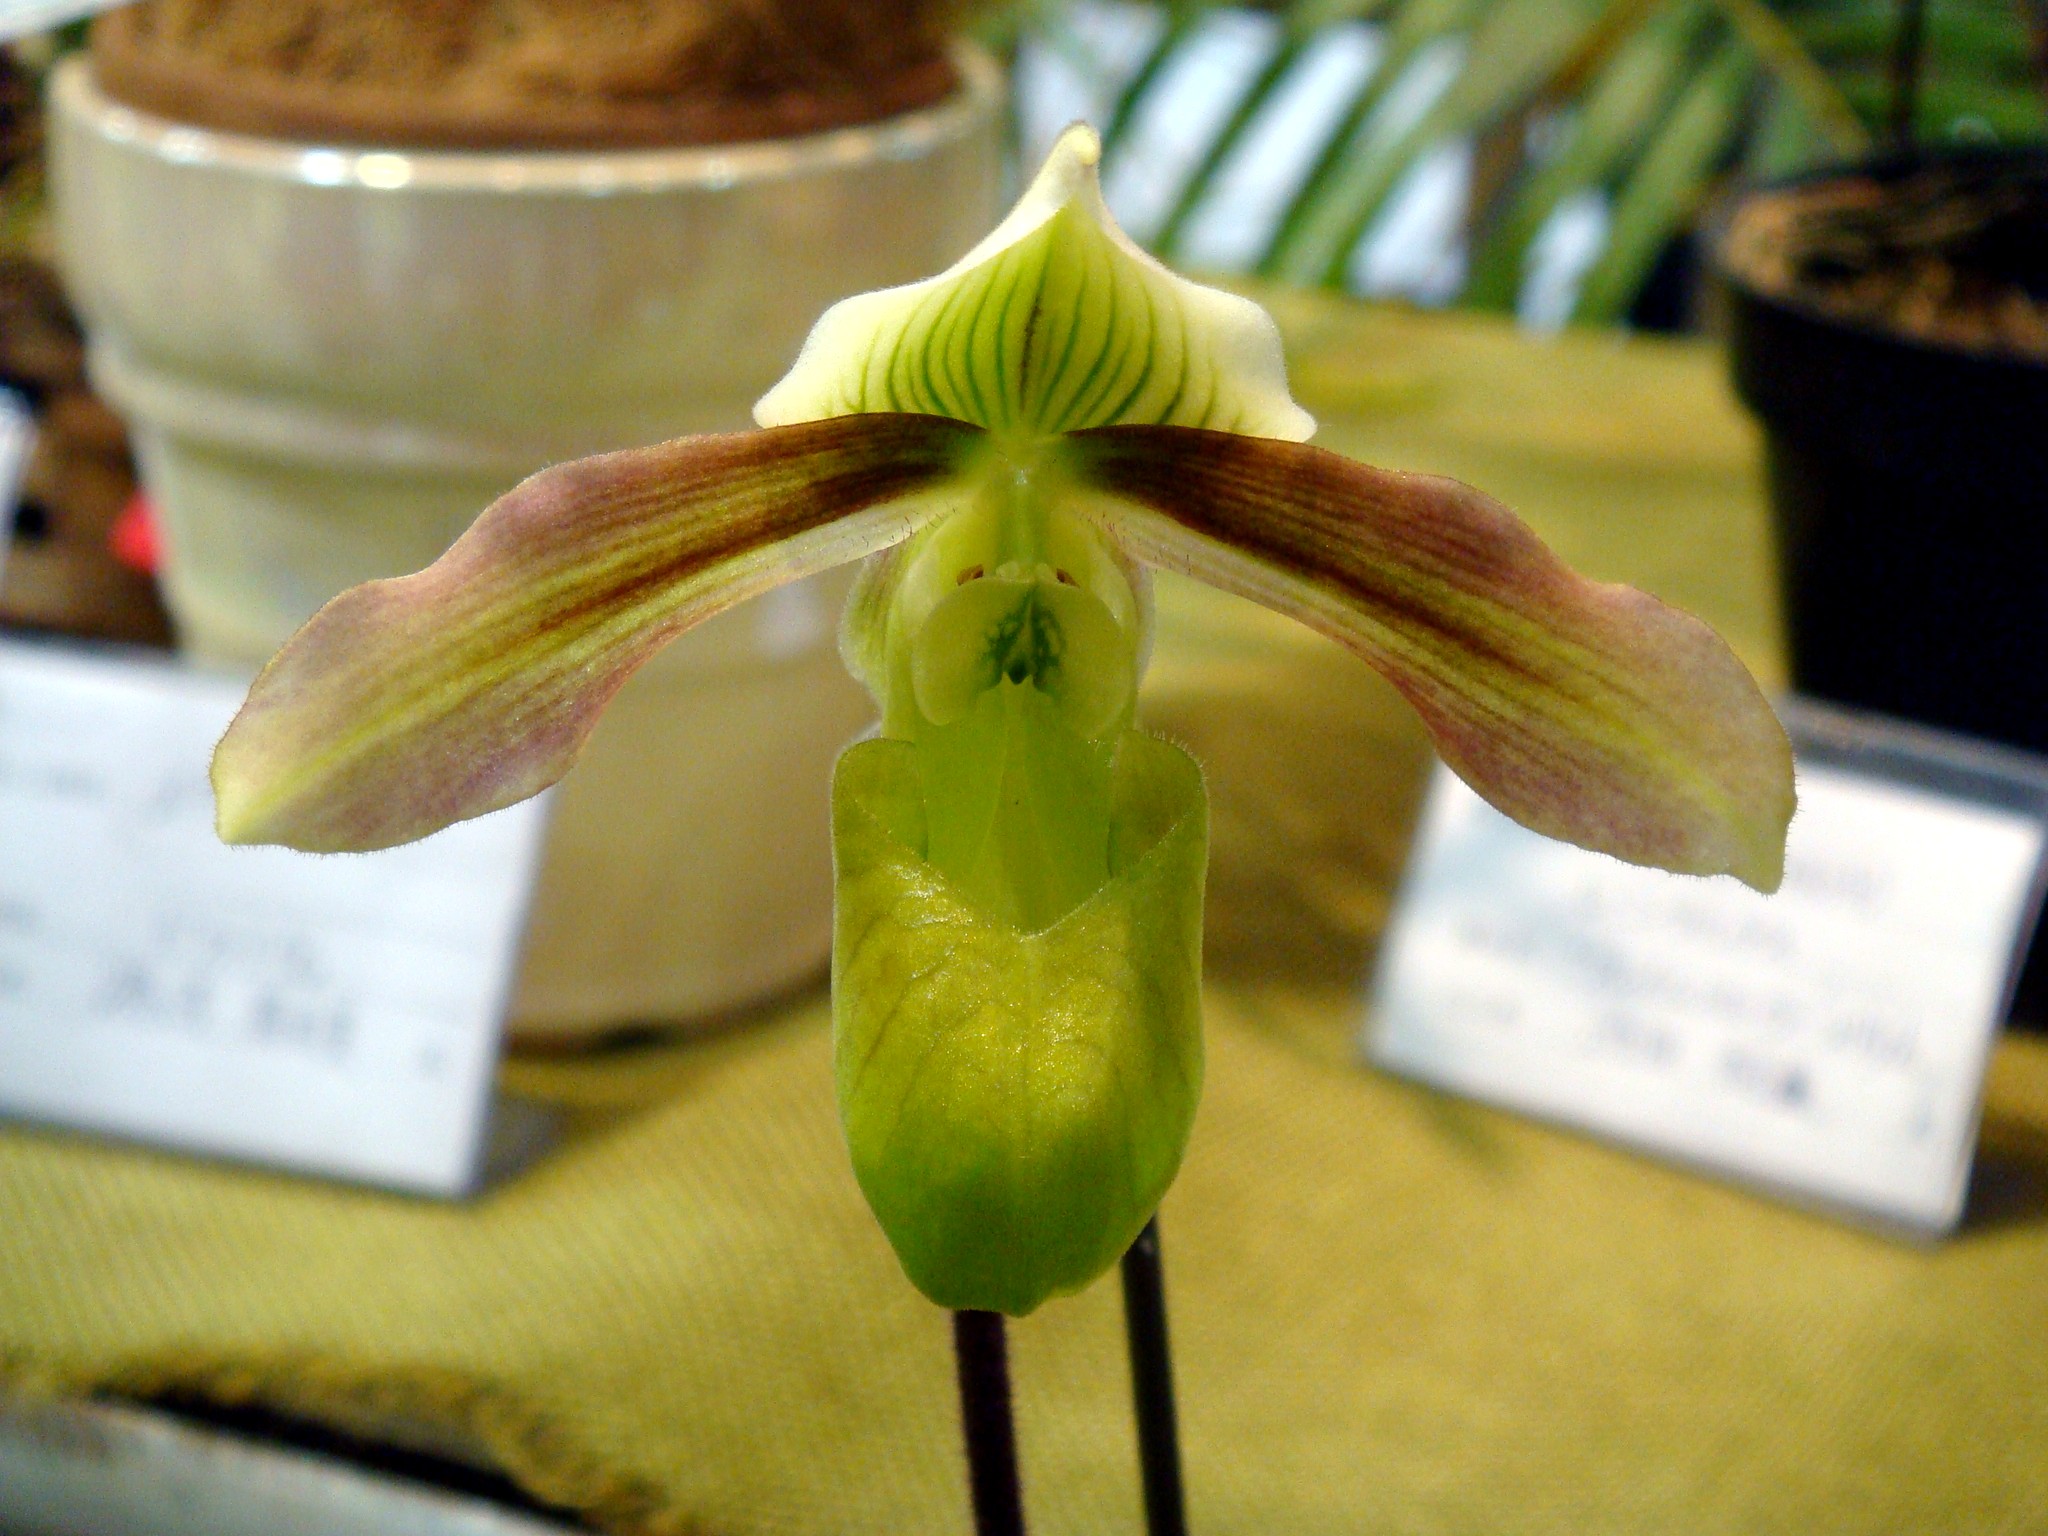 http://orchids.la.coocan.jp/Paphiopedilum/Paphiopedilum%20papuanum/DSC00388.JPG